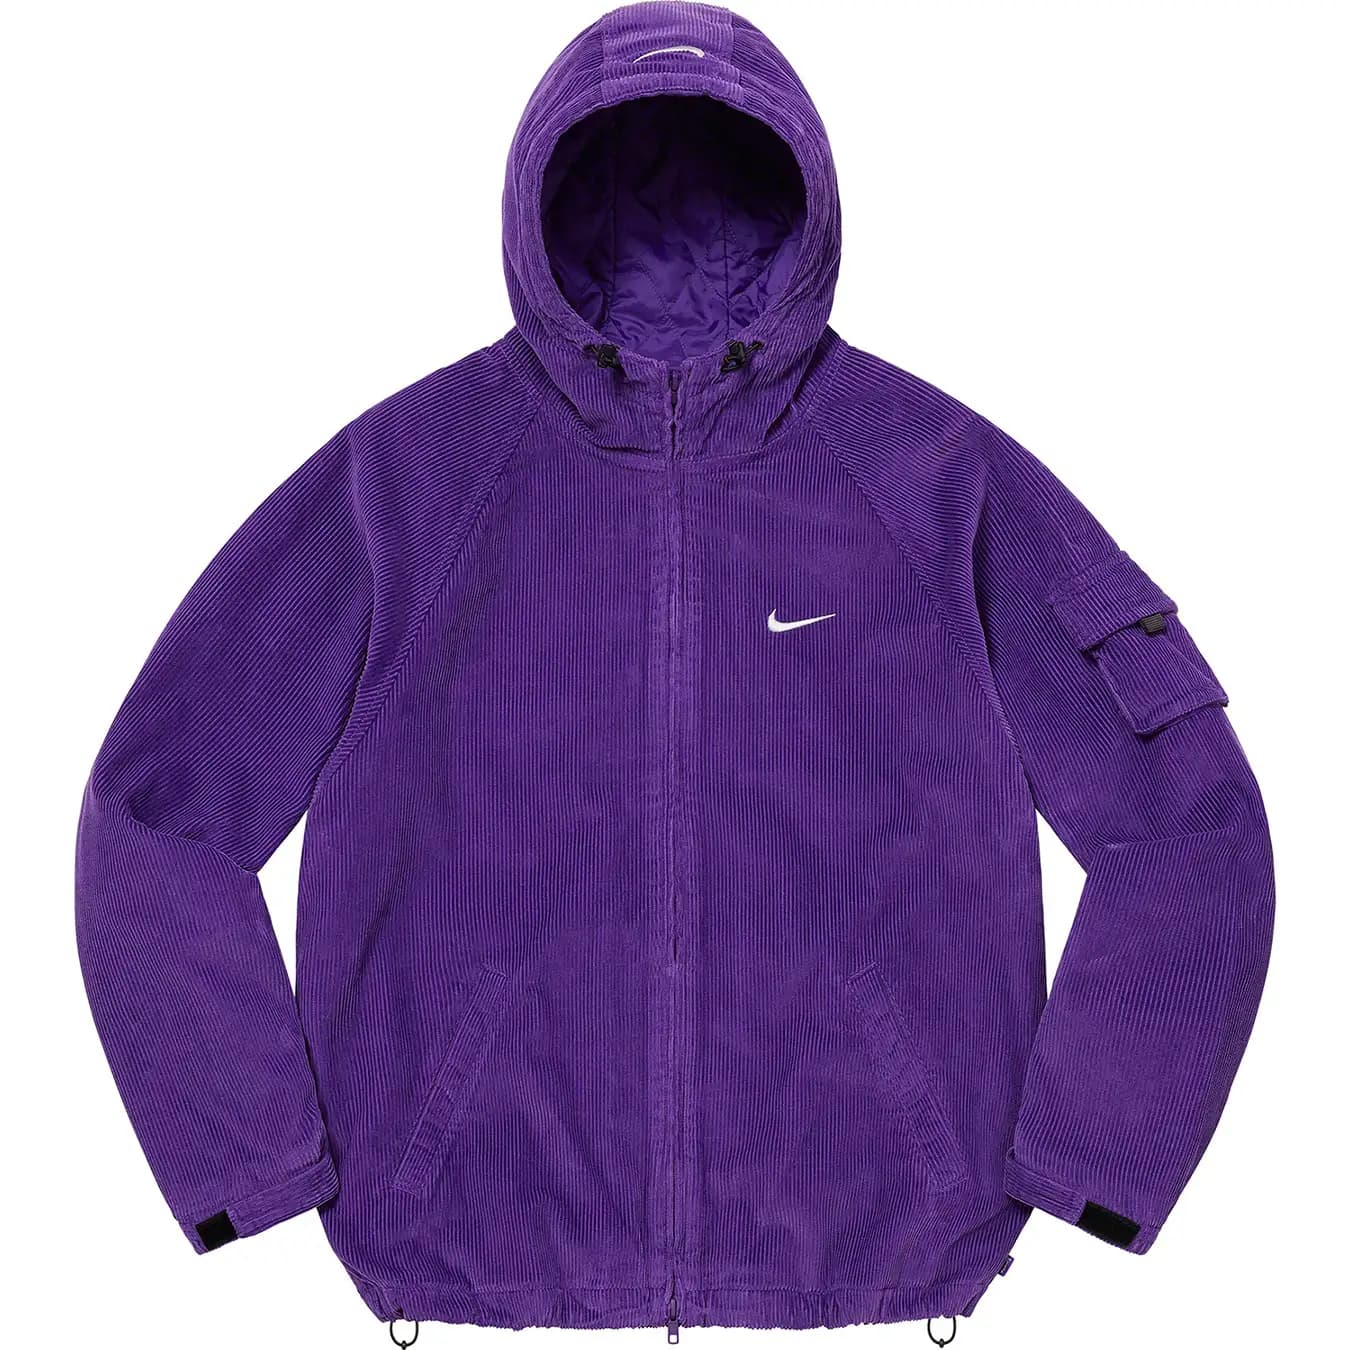 Supreme Nike Arc Crewneck  Purple L